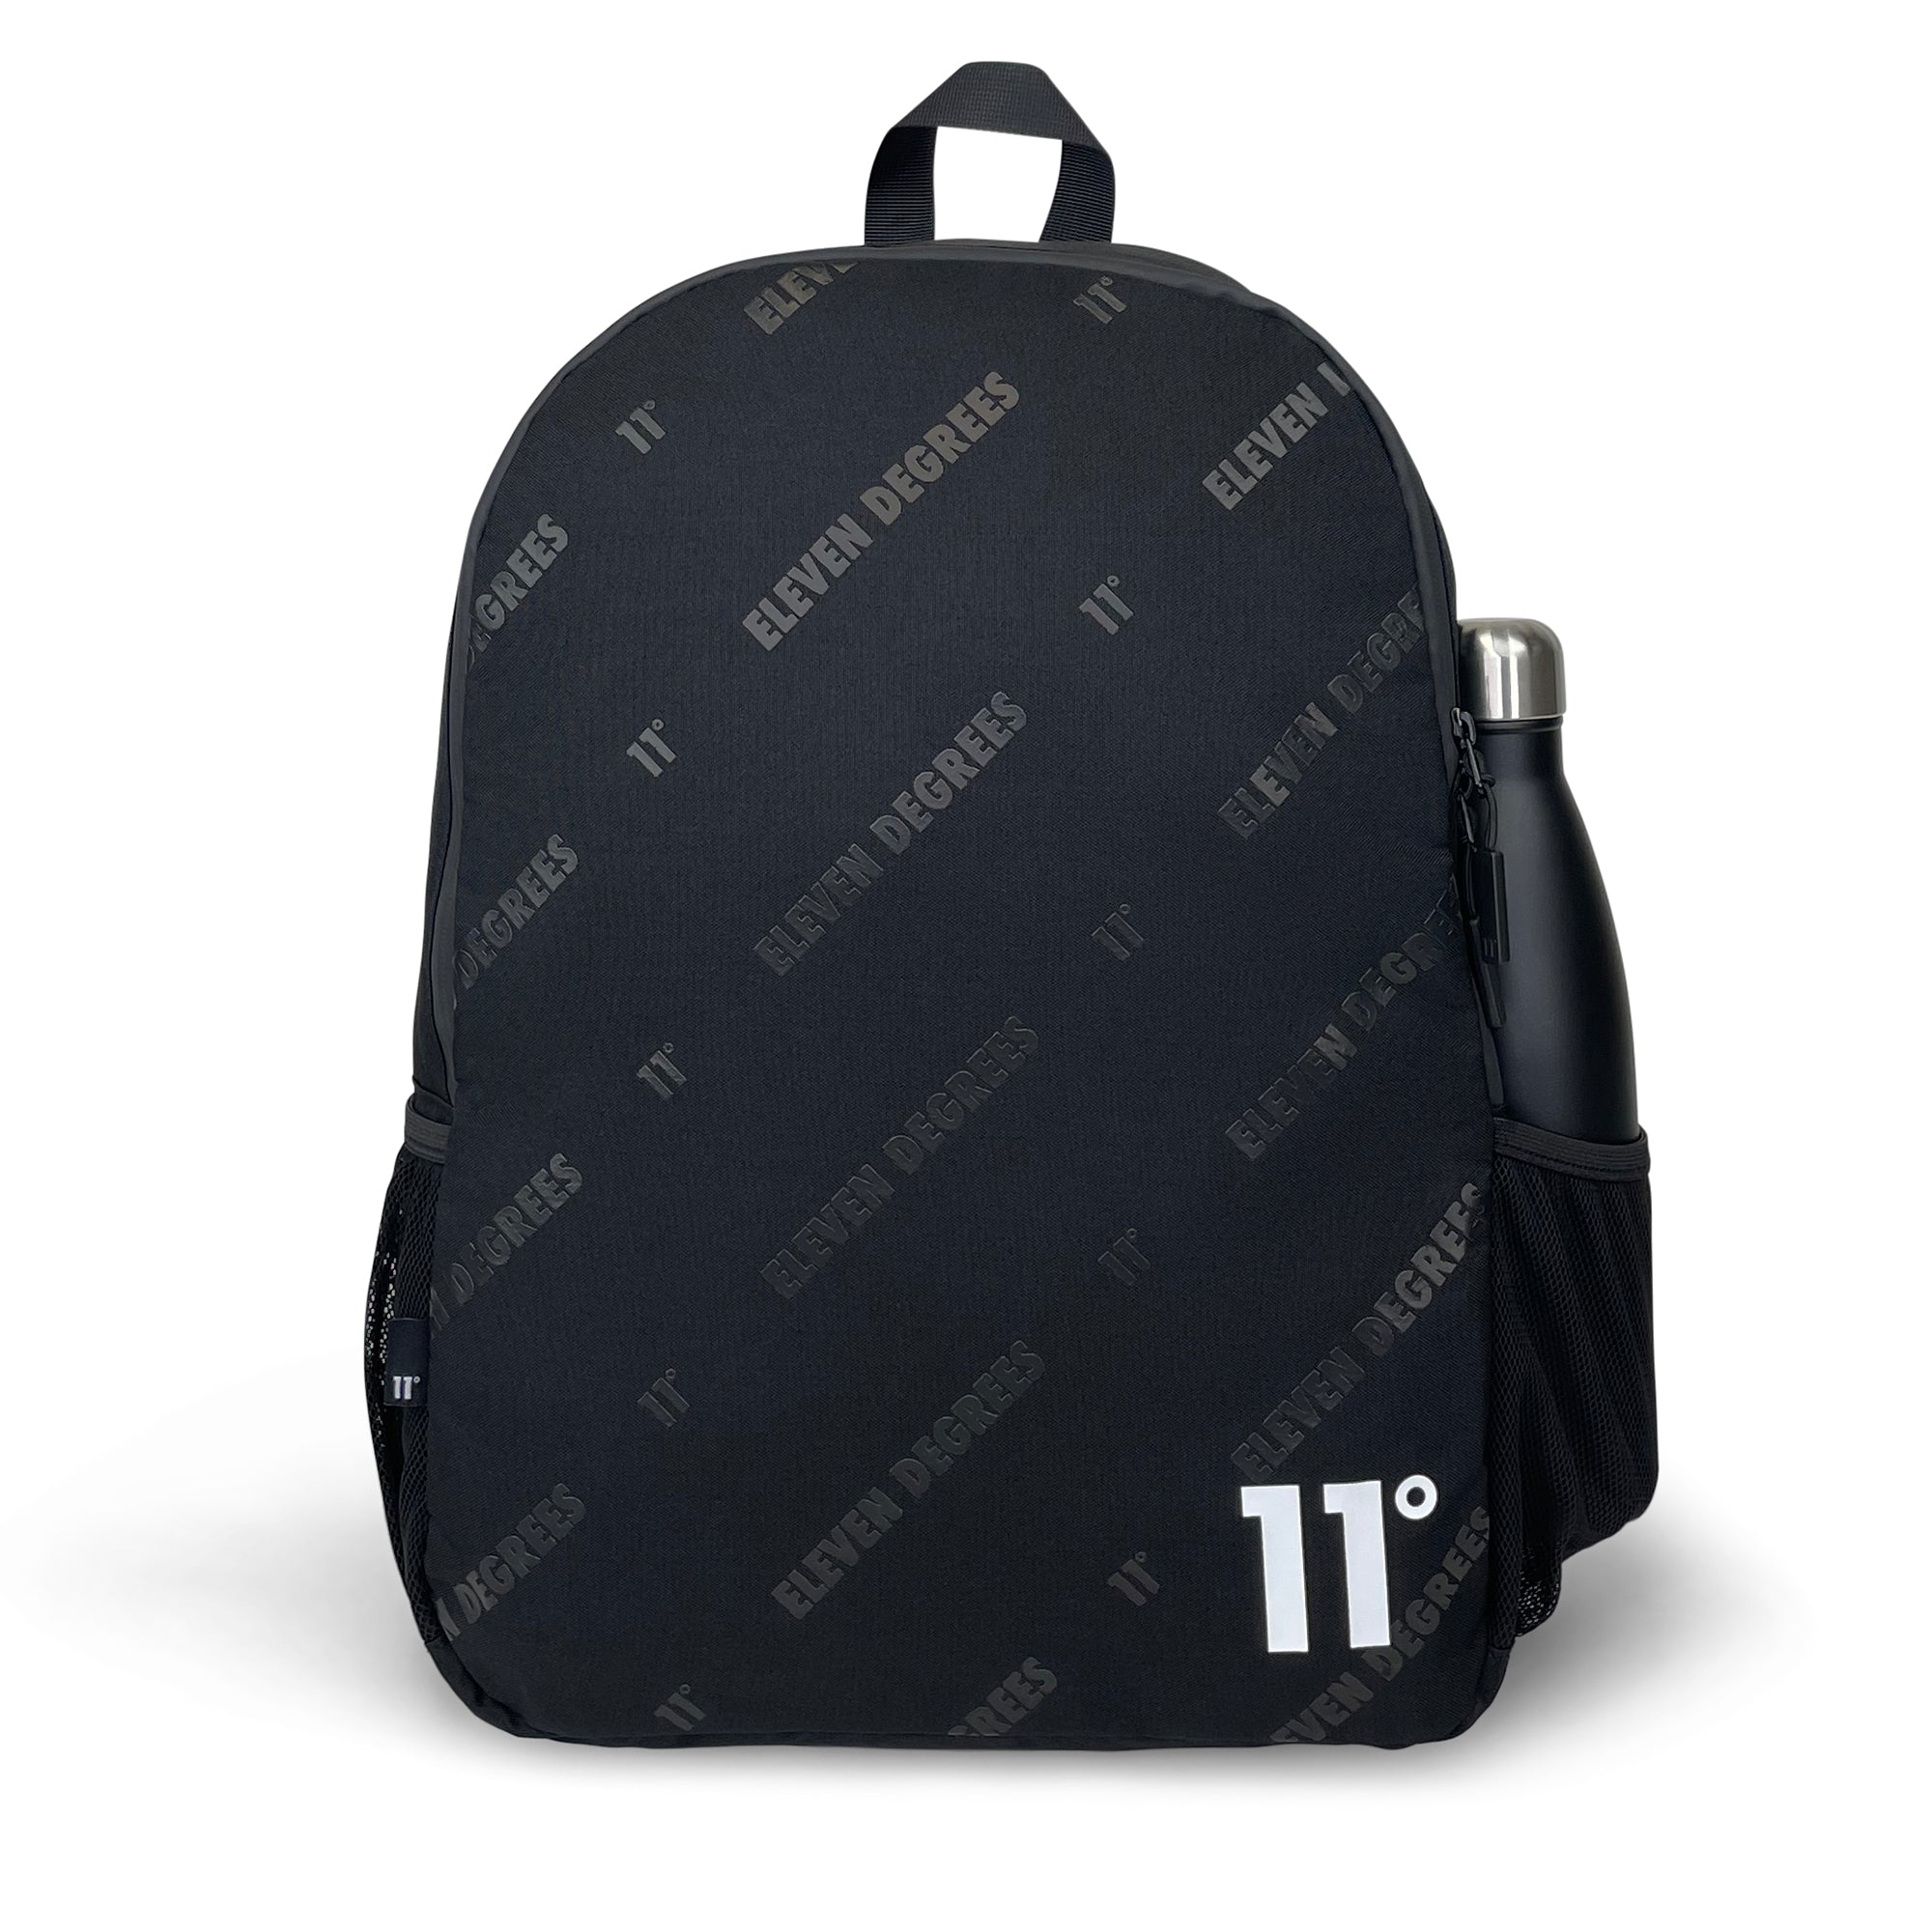 All Over Print Backpack-Backpack-11 Degrees-Black-SchoolBagsAndStuff